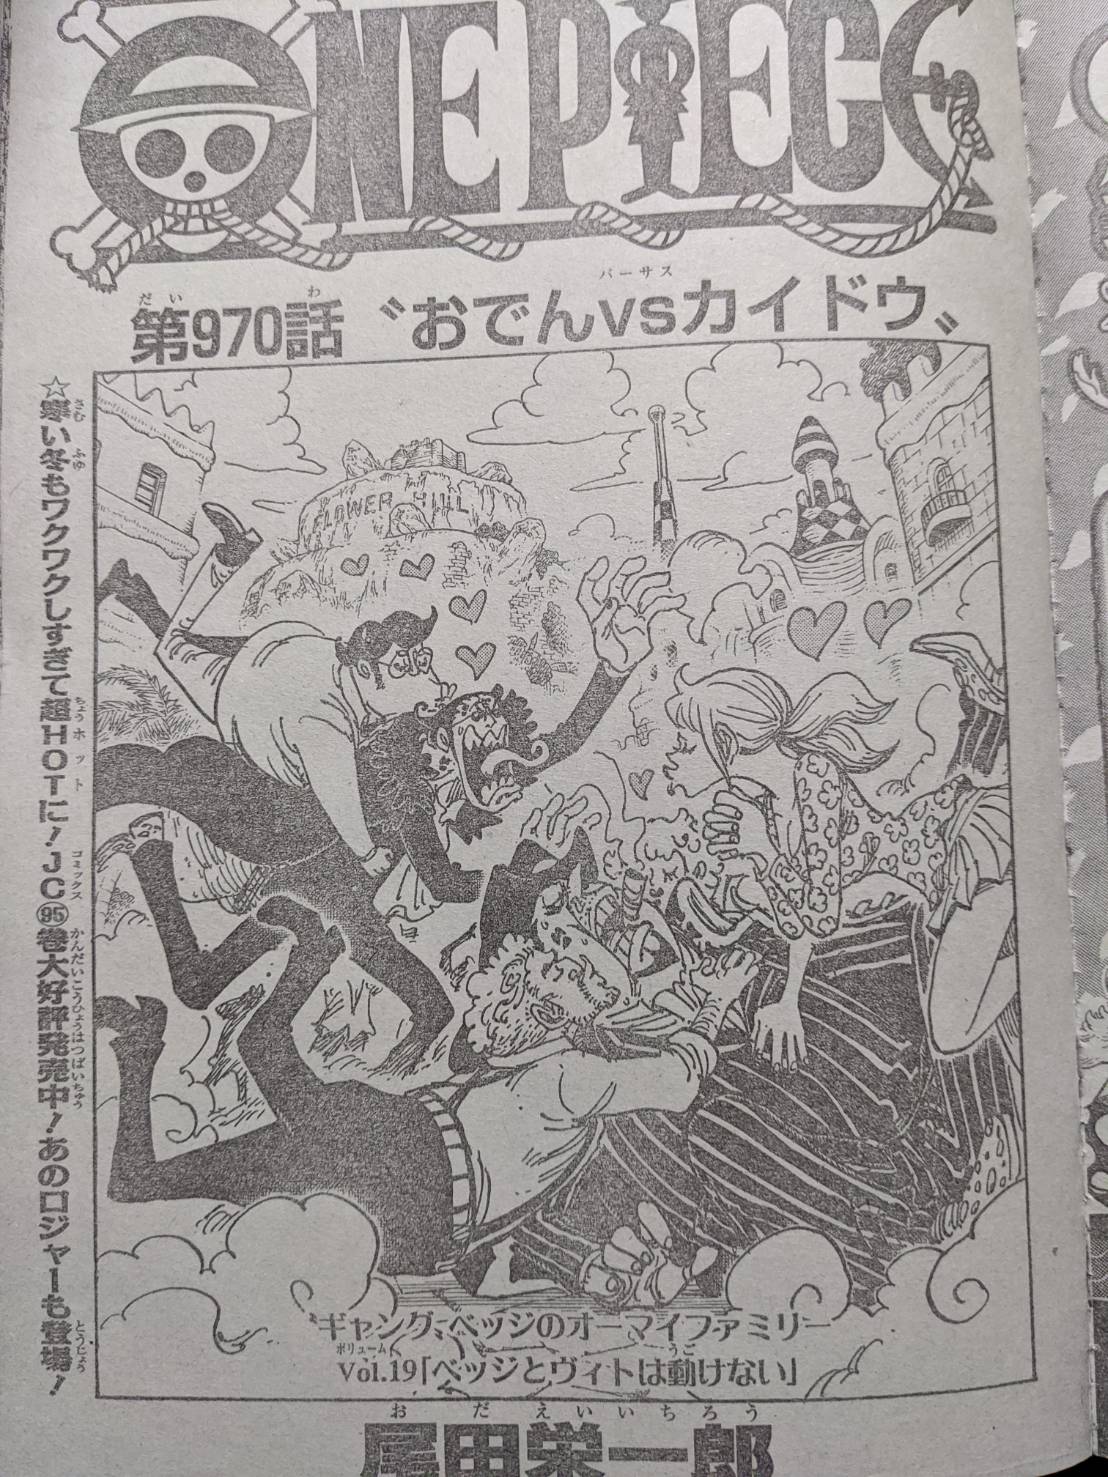 ワンピース915話扉絵のベラミーが染物職人を目指す事についての考察 One Piece世界でも名うてのdqnのその後 ワンピース考察 甲塚誓ノ介のいい芝居してますね Part 3